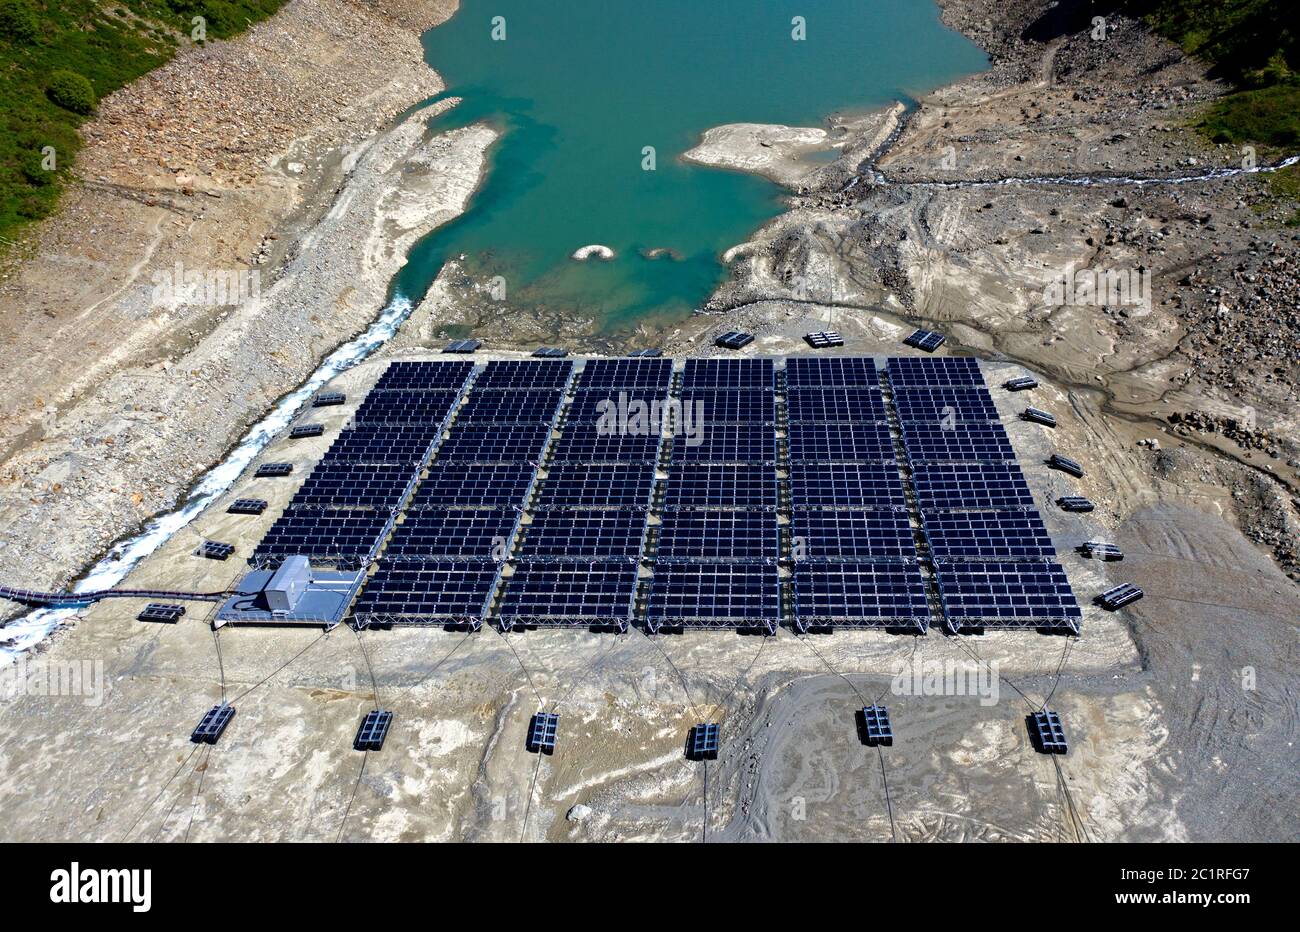 Niedrige Wasserstände beeinträchtigen den Betrieb des ersten schwimmenden alpinen Solarkraftwerks, des Lac des Toules, Bourg-St-Pierre, Wallis, Schweiz Stockfoto